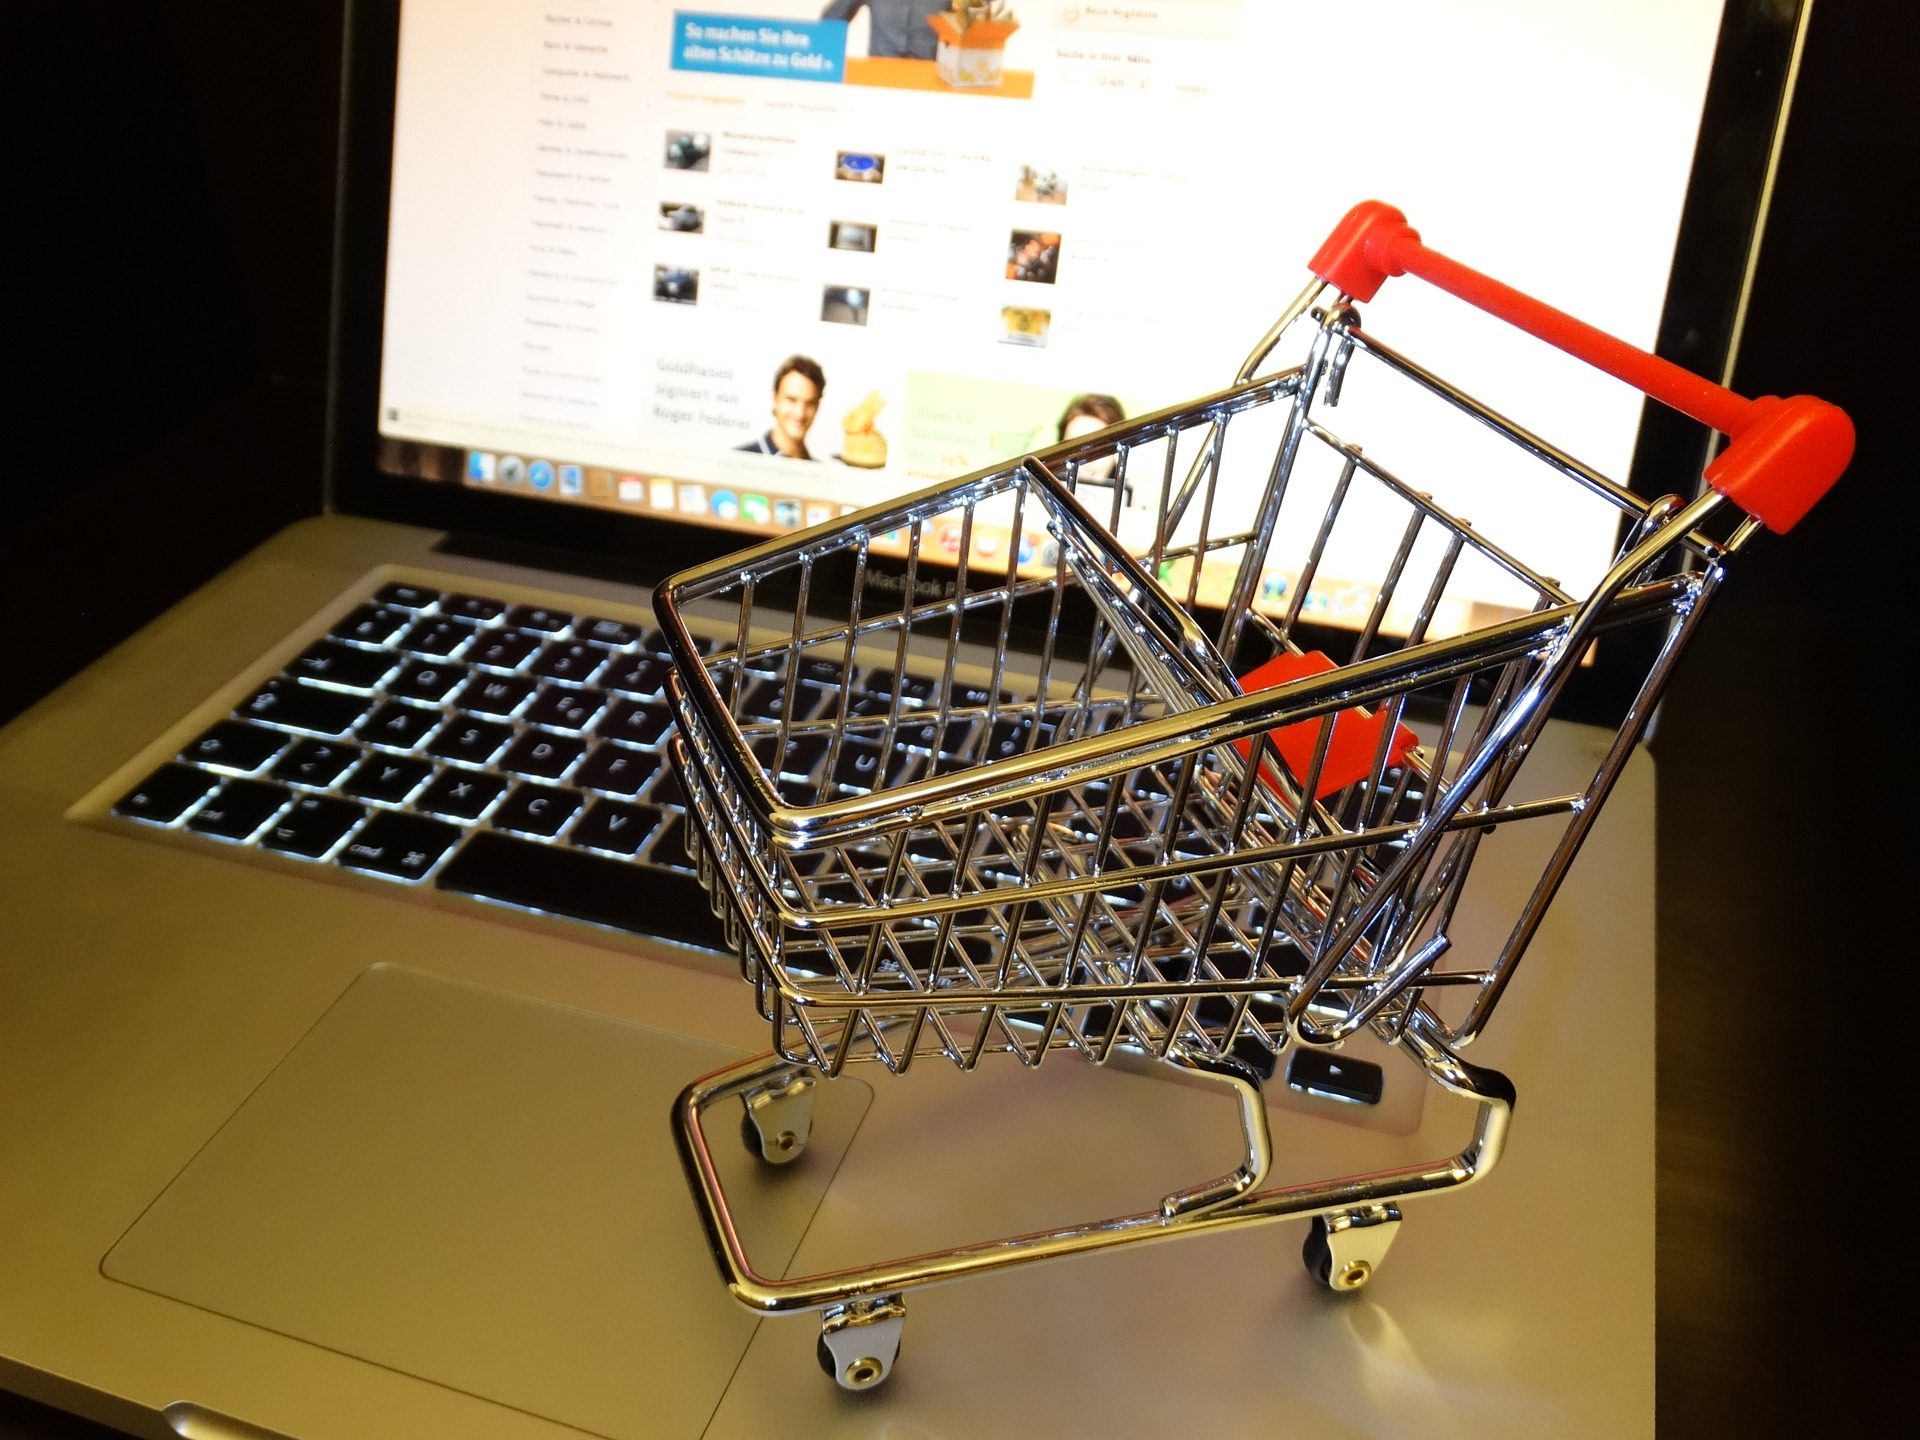 Jak robić zakupy w internecie - by były bezpieczne?